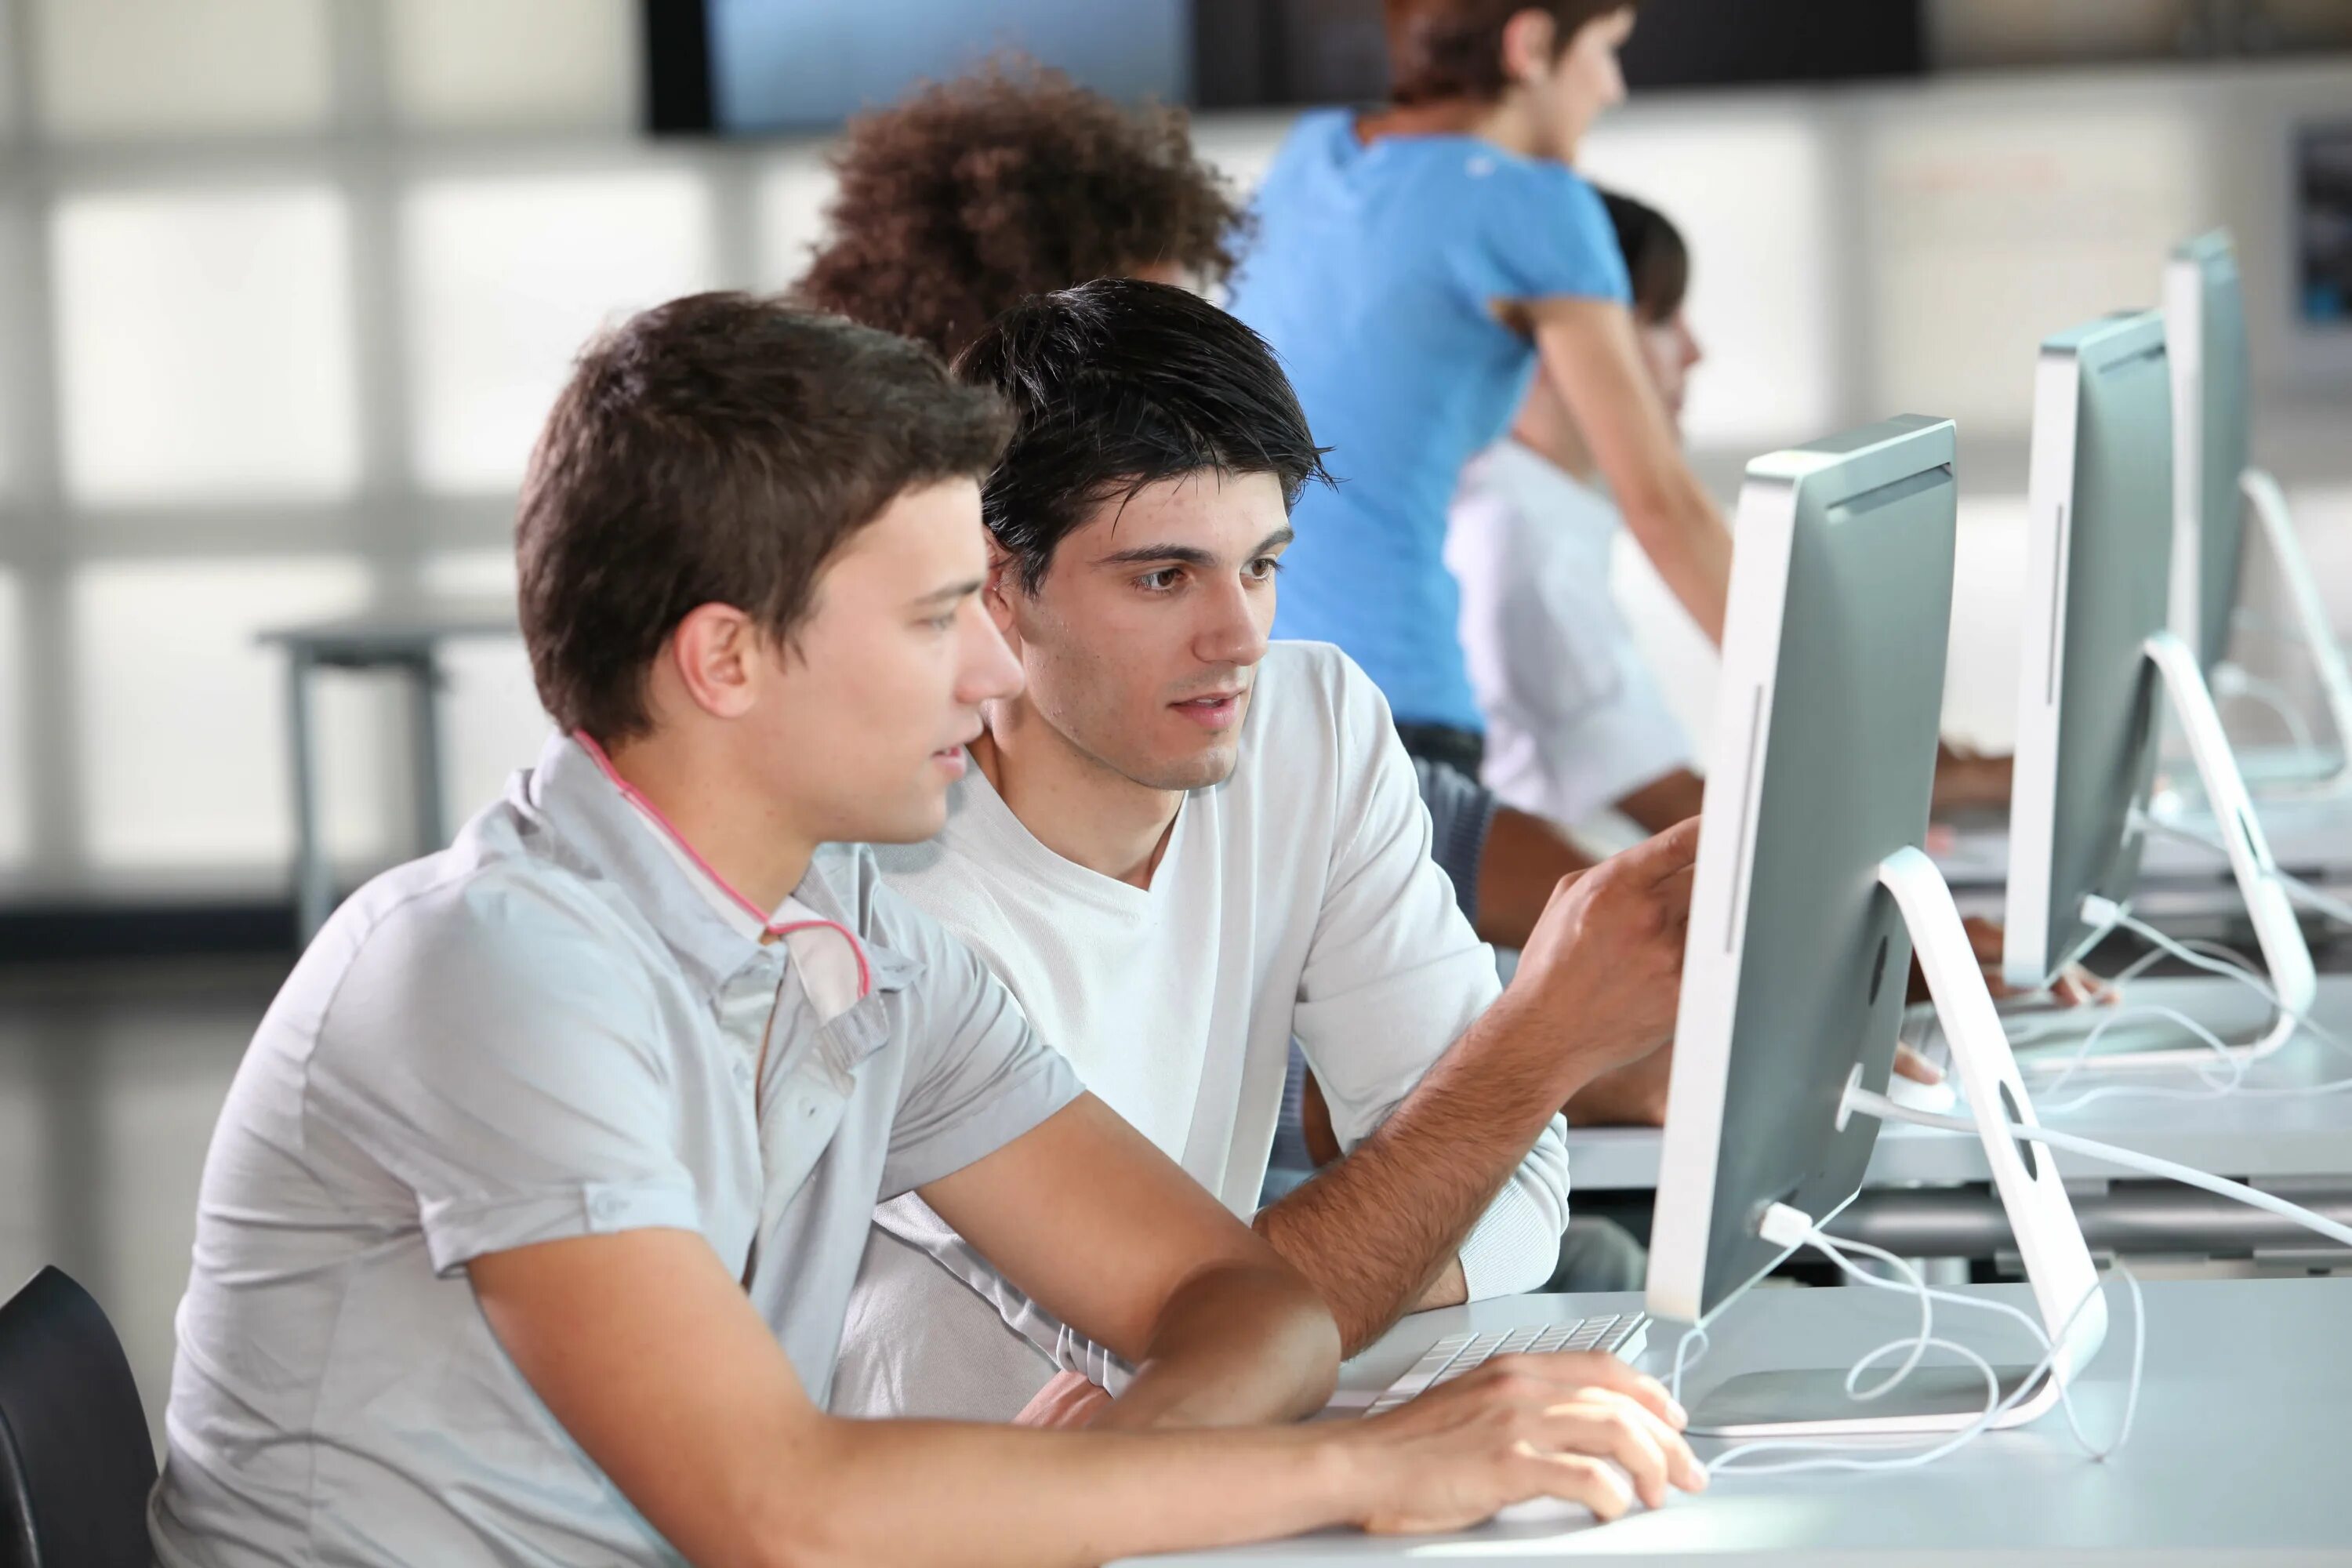 Ис обучение. Человек за компьютером. Студент программист. Компьютер и человек. Подросток за компьютером.